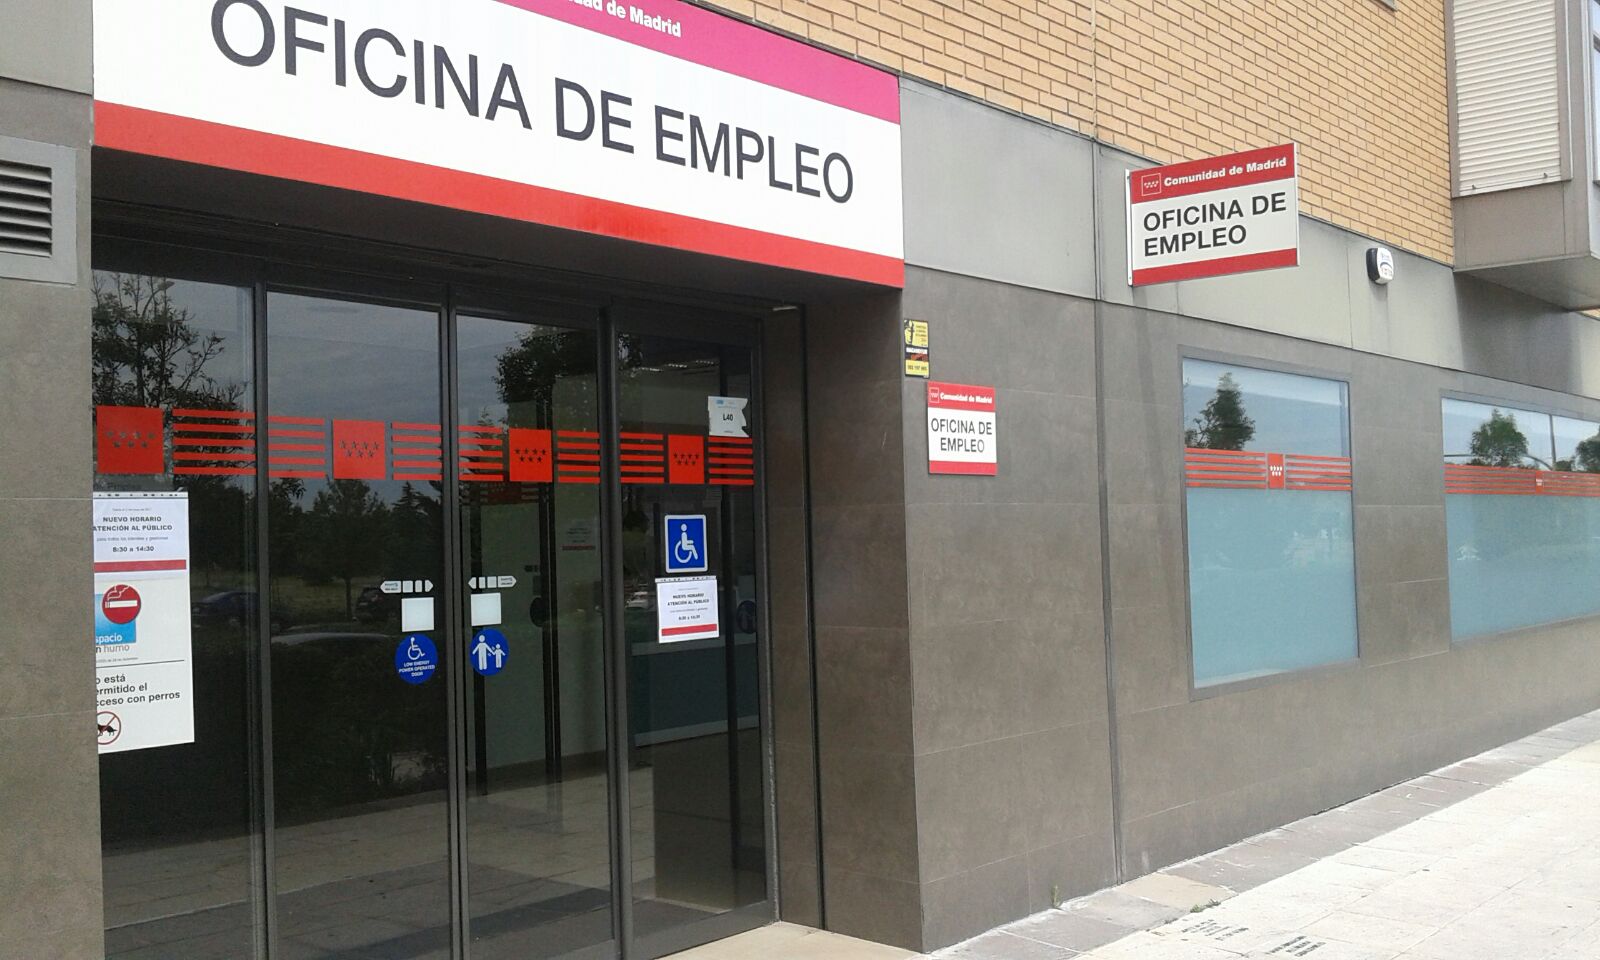 Oficina de empleo Sanchinarro Fuente: Comunidad de Madrid